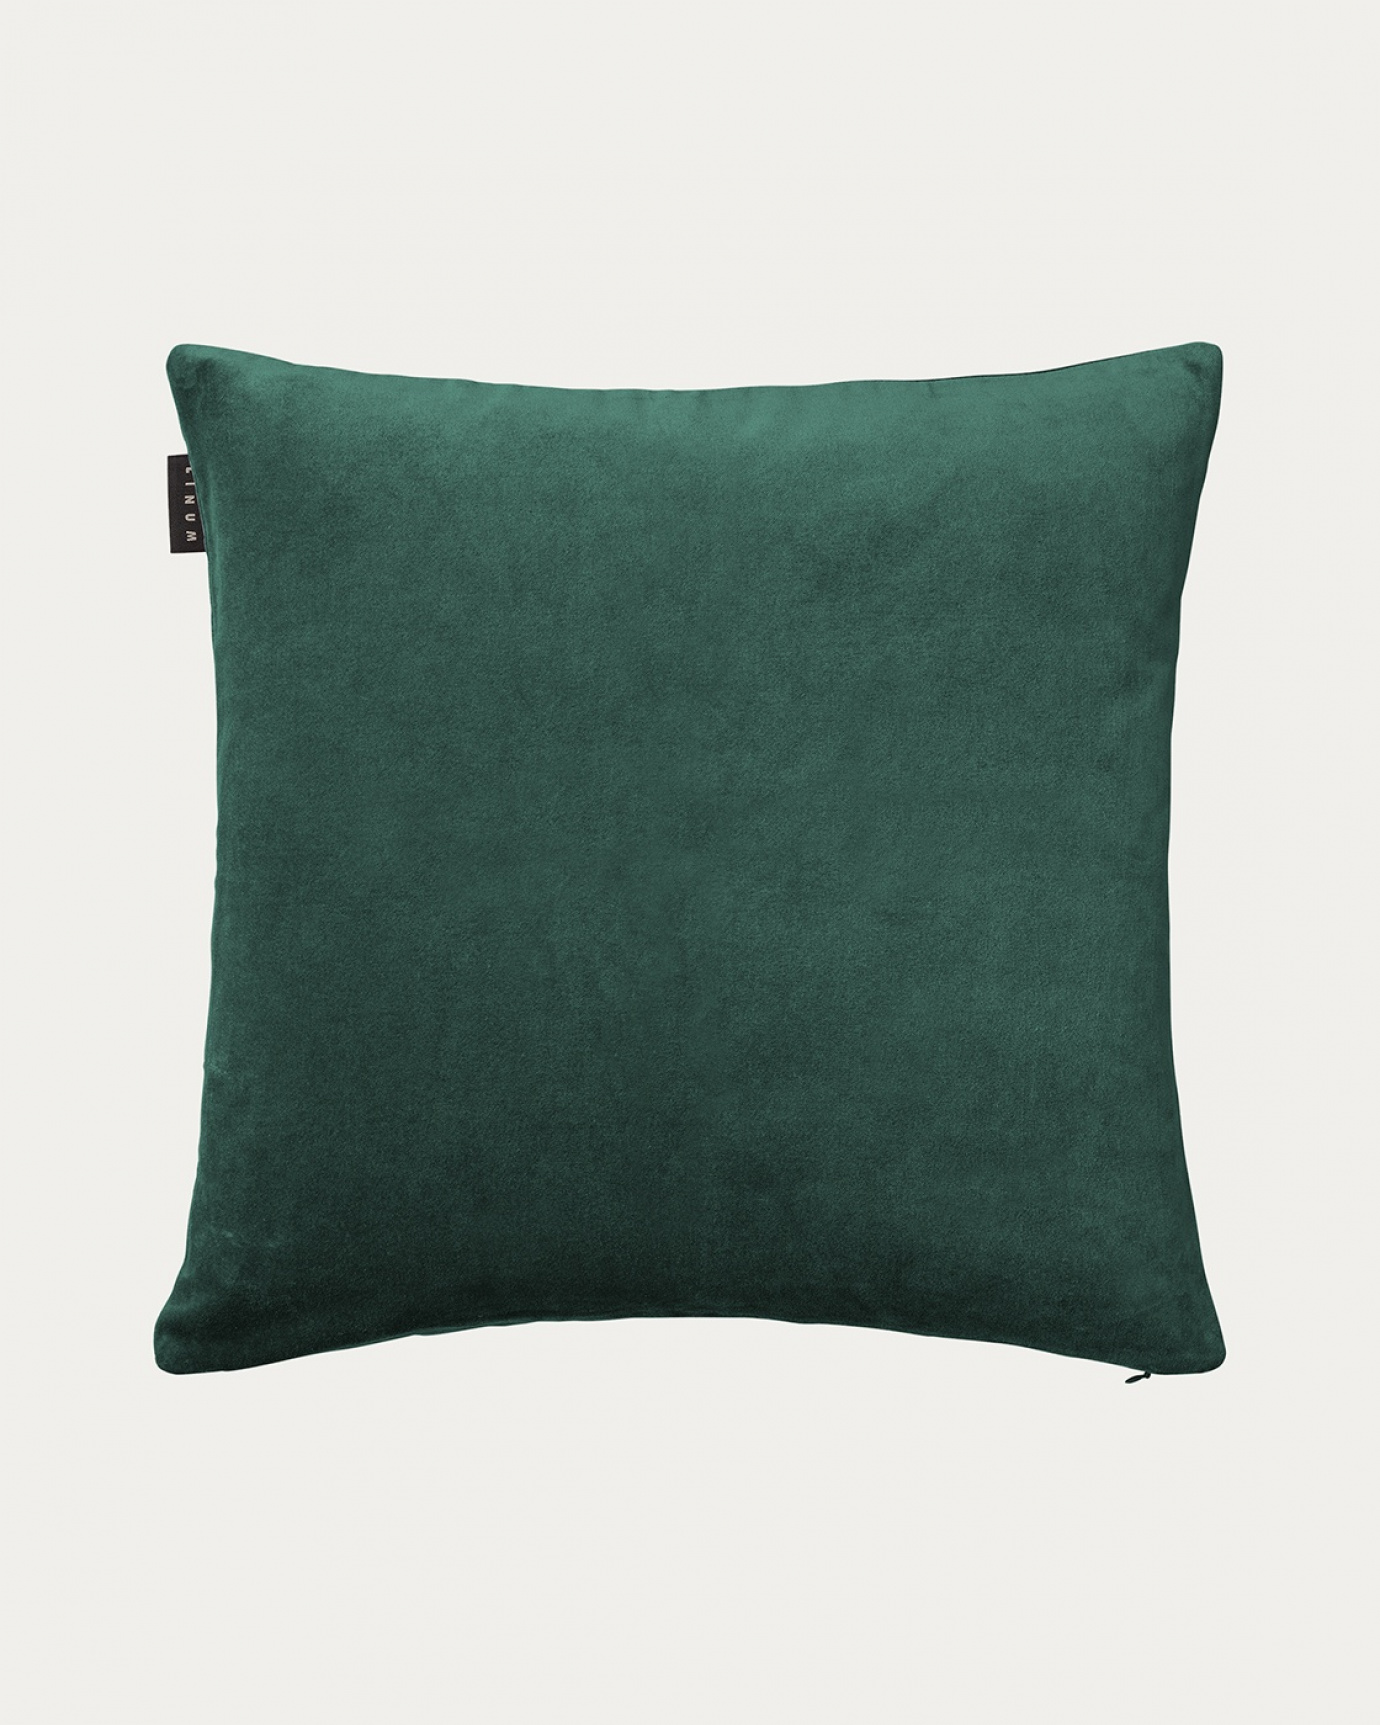 Immagine prodotto verde smeraldo intenso PAOLO copricuscini in morbido velluto di cotone di LINUM DESIGN. Dimensioni 50x50 cm.